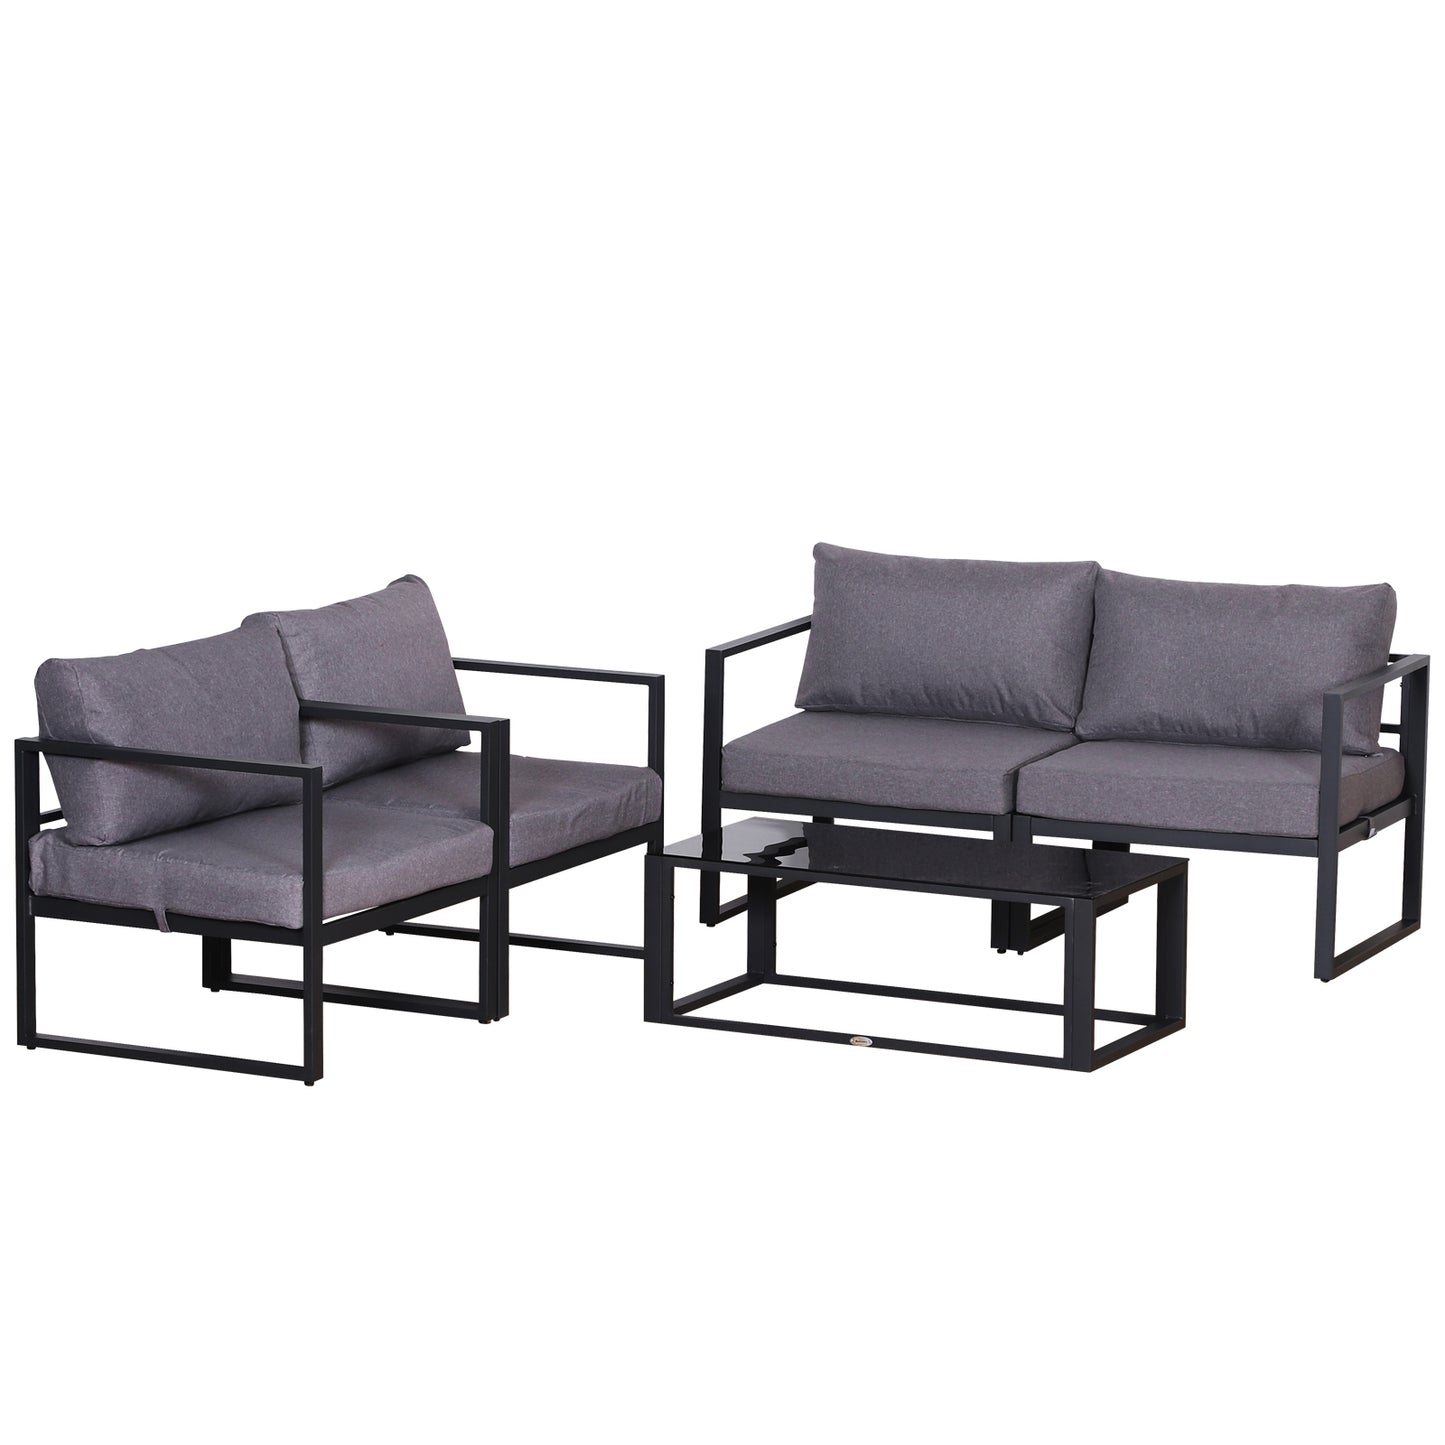 Outsunny Aluminium Frame Outdoor Garden Double & Single Sofa Furniture Set w/ Table Grey